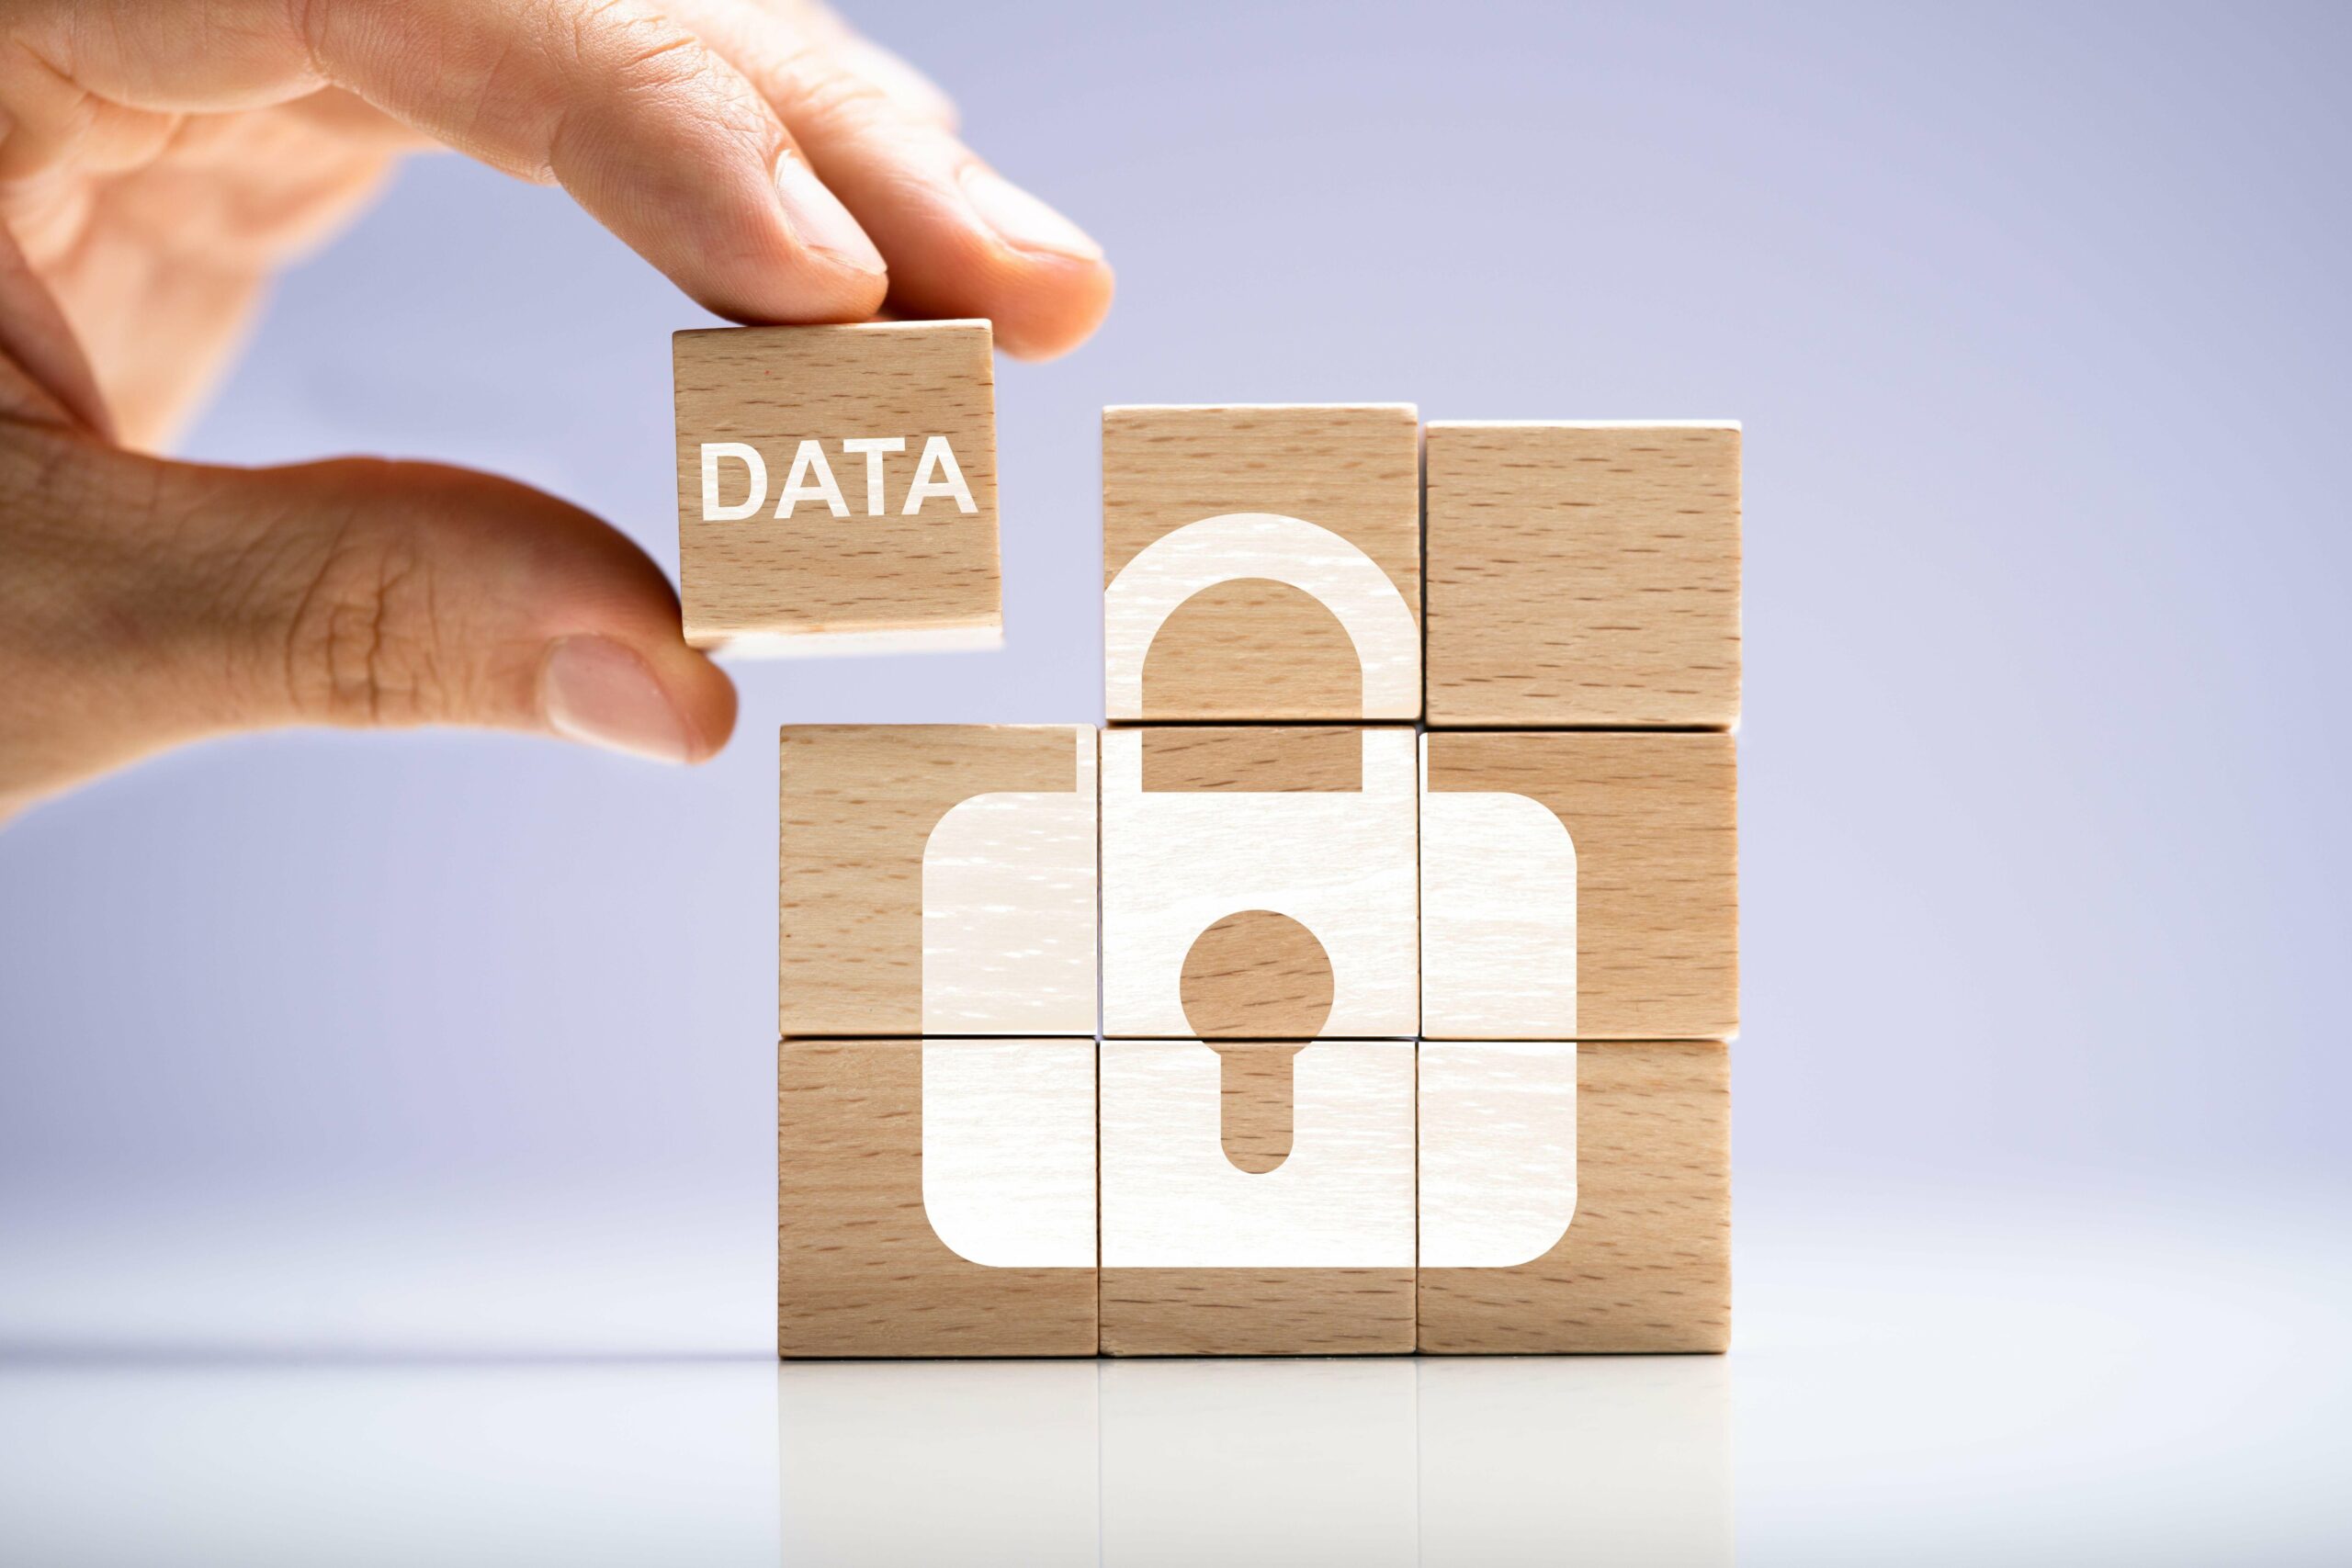 3 strategieën voor toekomstbestendige gegevensprivacy